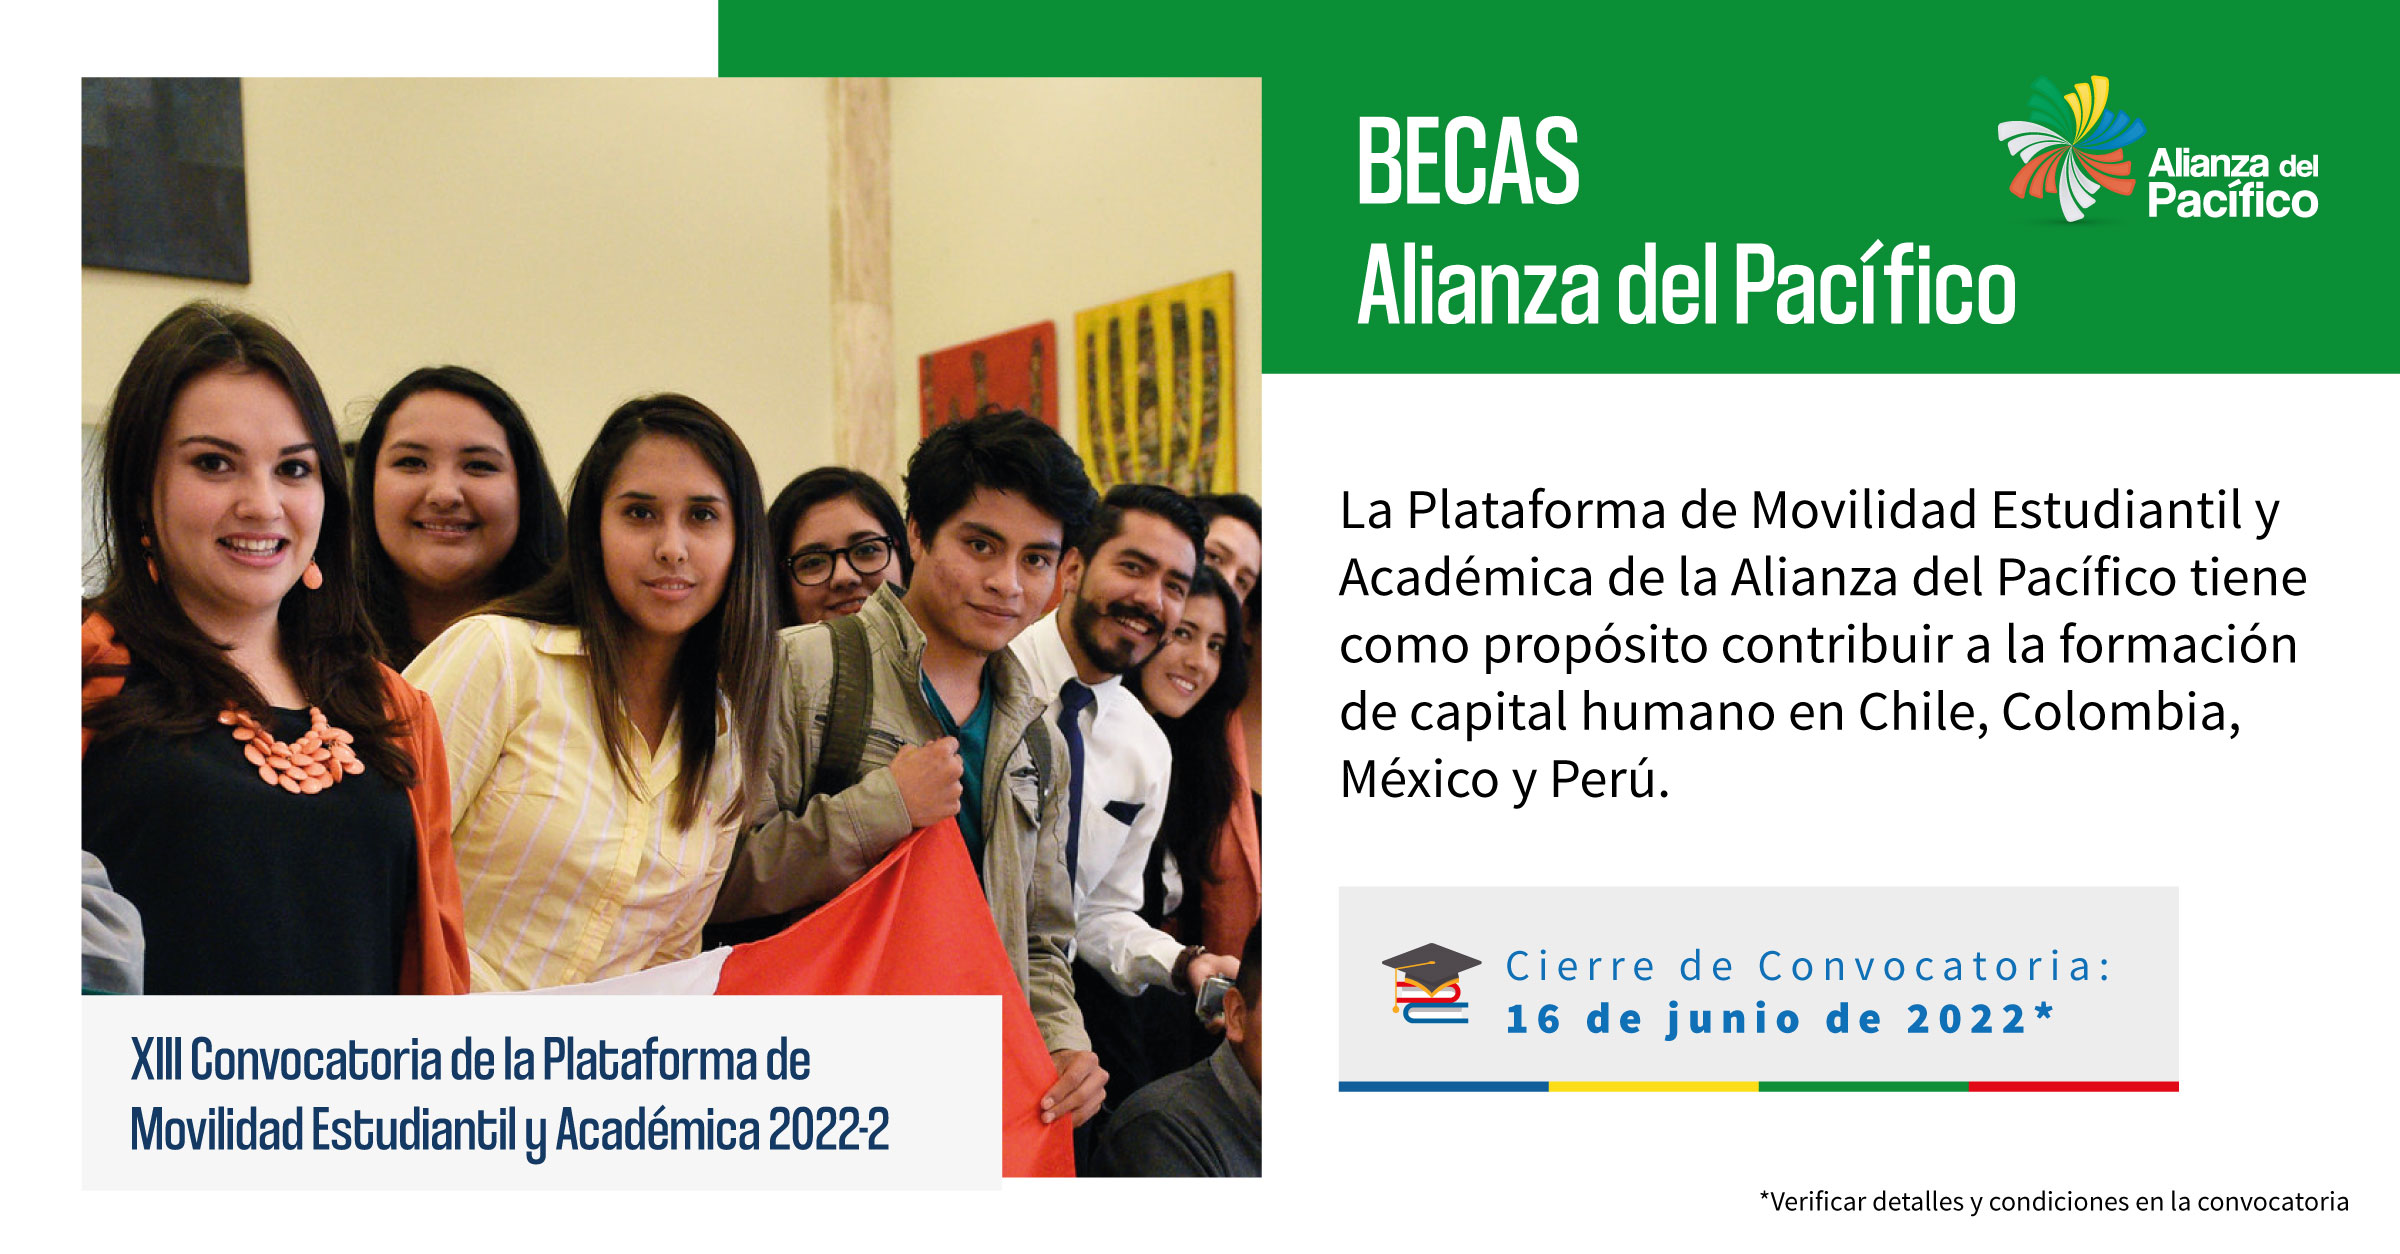 XIII Convocatoria de la Plataforma de Movilidad Estudiantil y Académica de la Alianza del Pacífico 2022-2